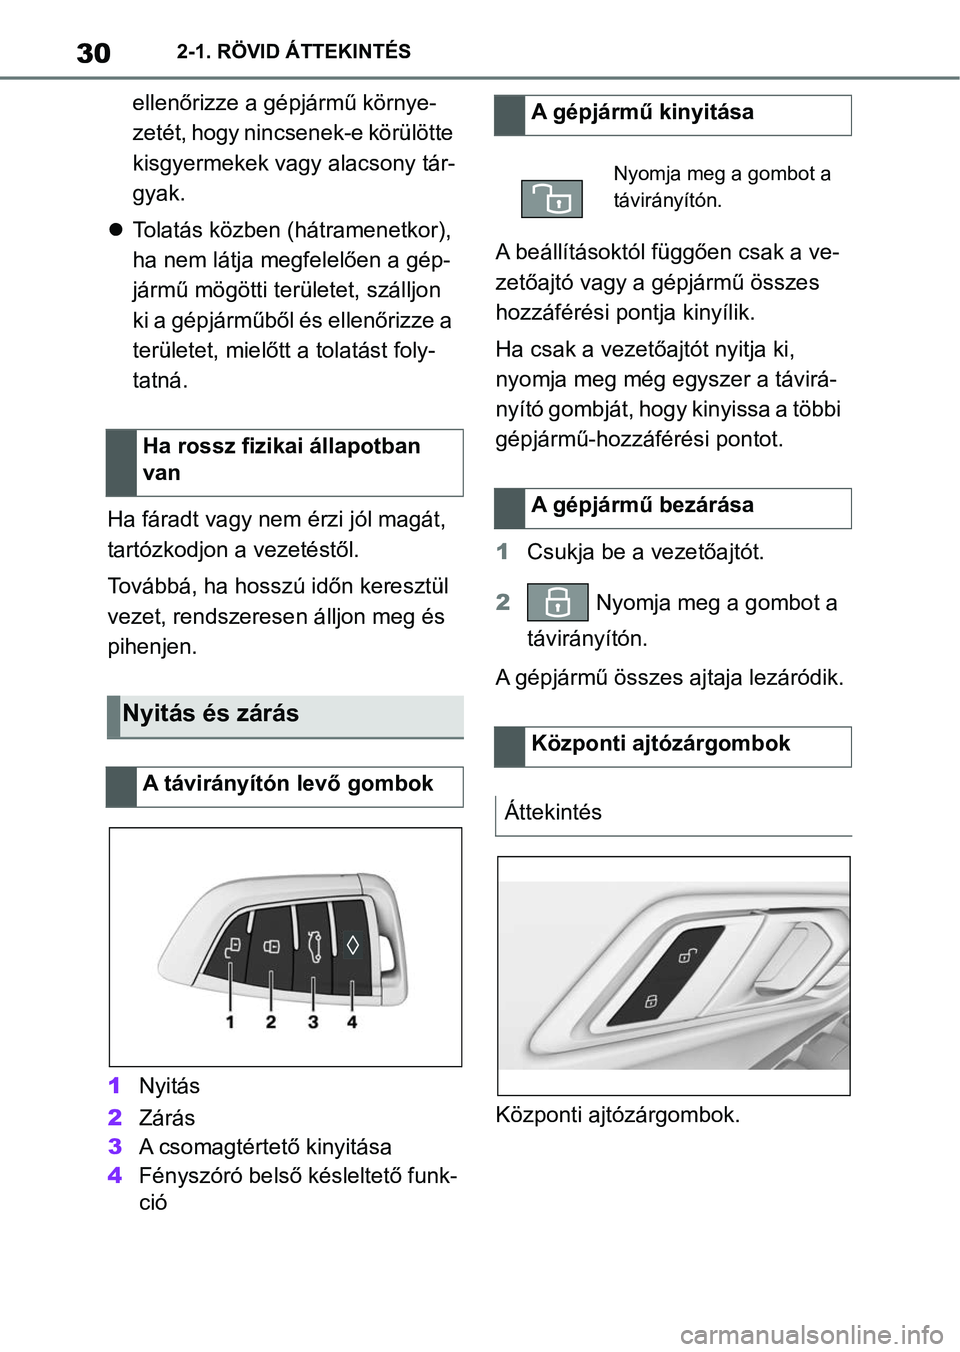 TOYOTA SUPRA 2020  Kezelési útmutató (in Hungarian) 302-1. RÖVID ÁTTEKINTÉS
ellenőrizze a gépjármű környe-
zetét, hogy nincsenek-e körülötte 
kisgyermekek vagy alacsony tár-
gyak.
 Tolatás közben ( hátramenetkor), 
ha nem látja megf